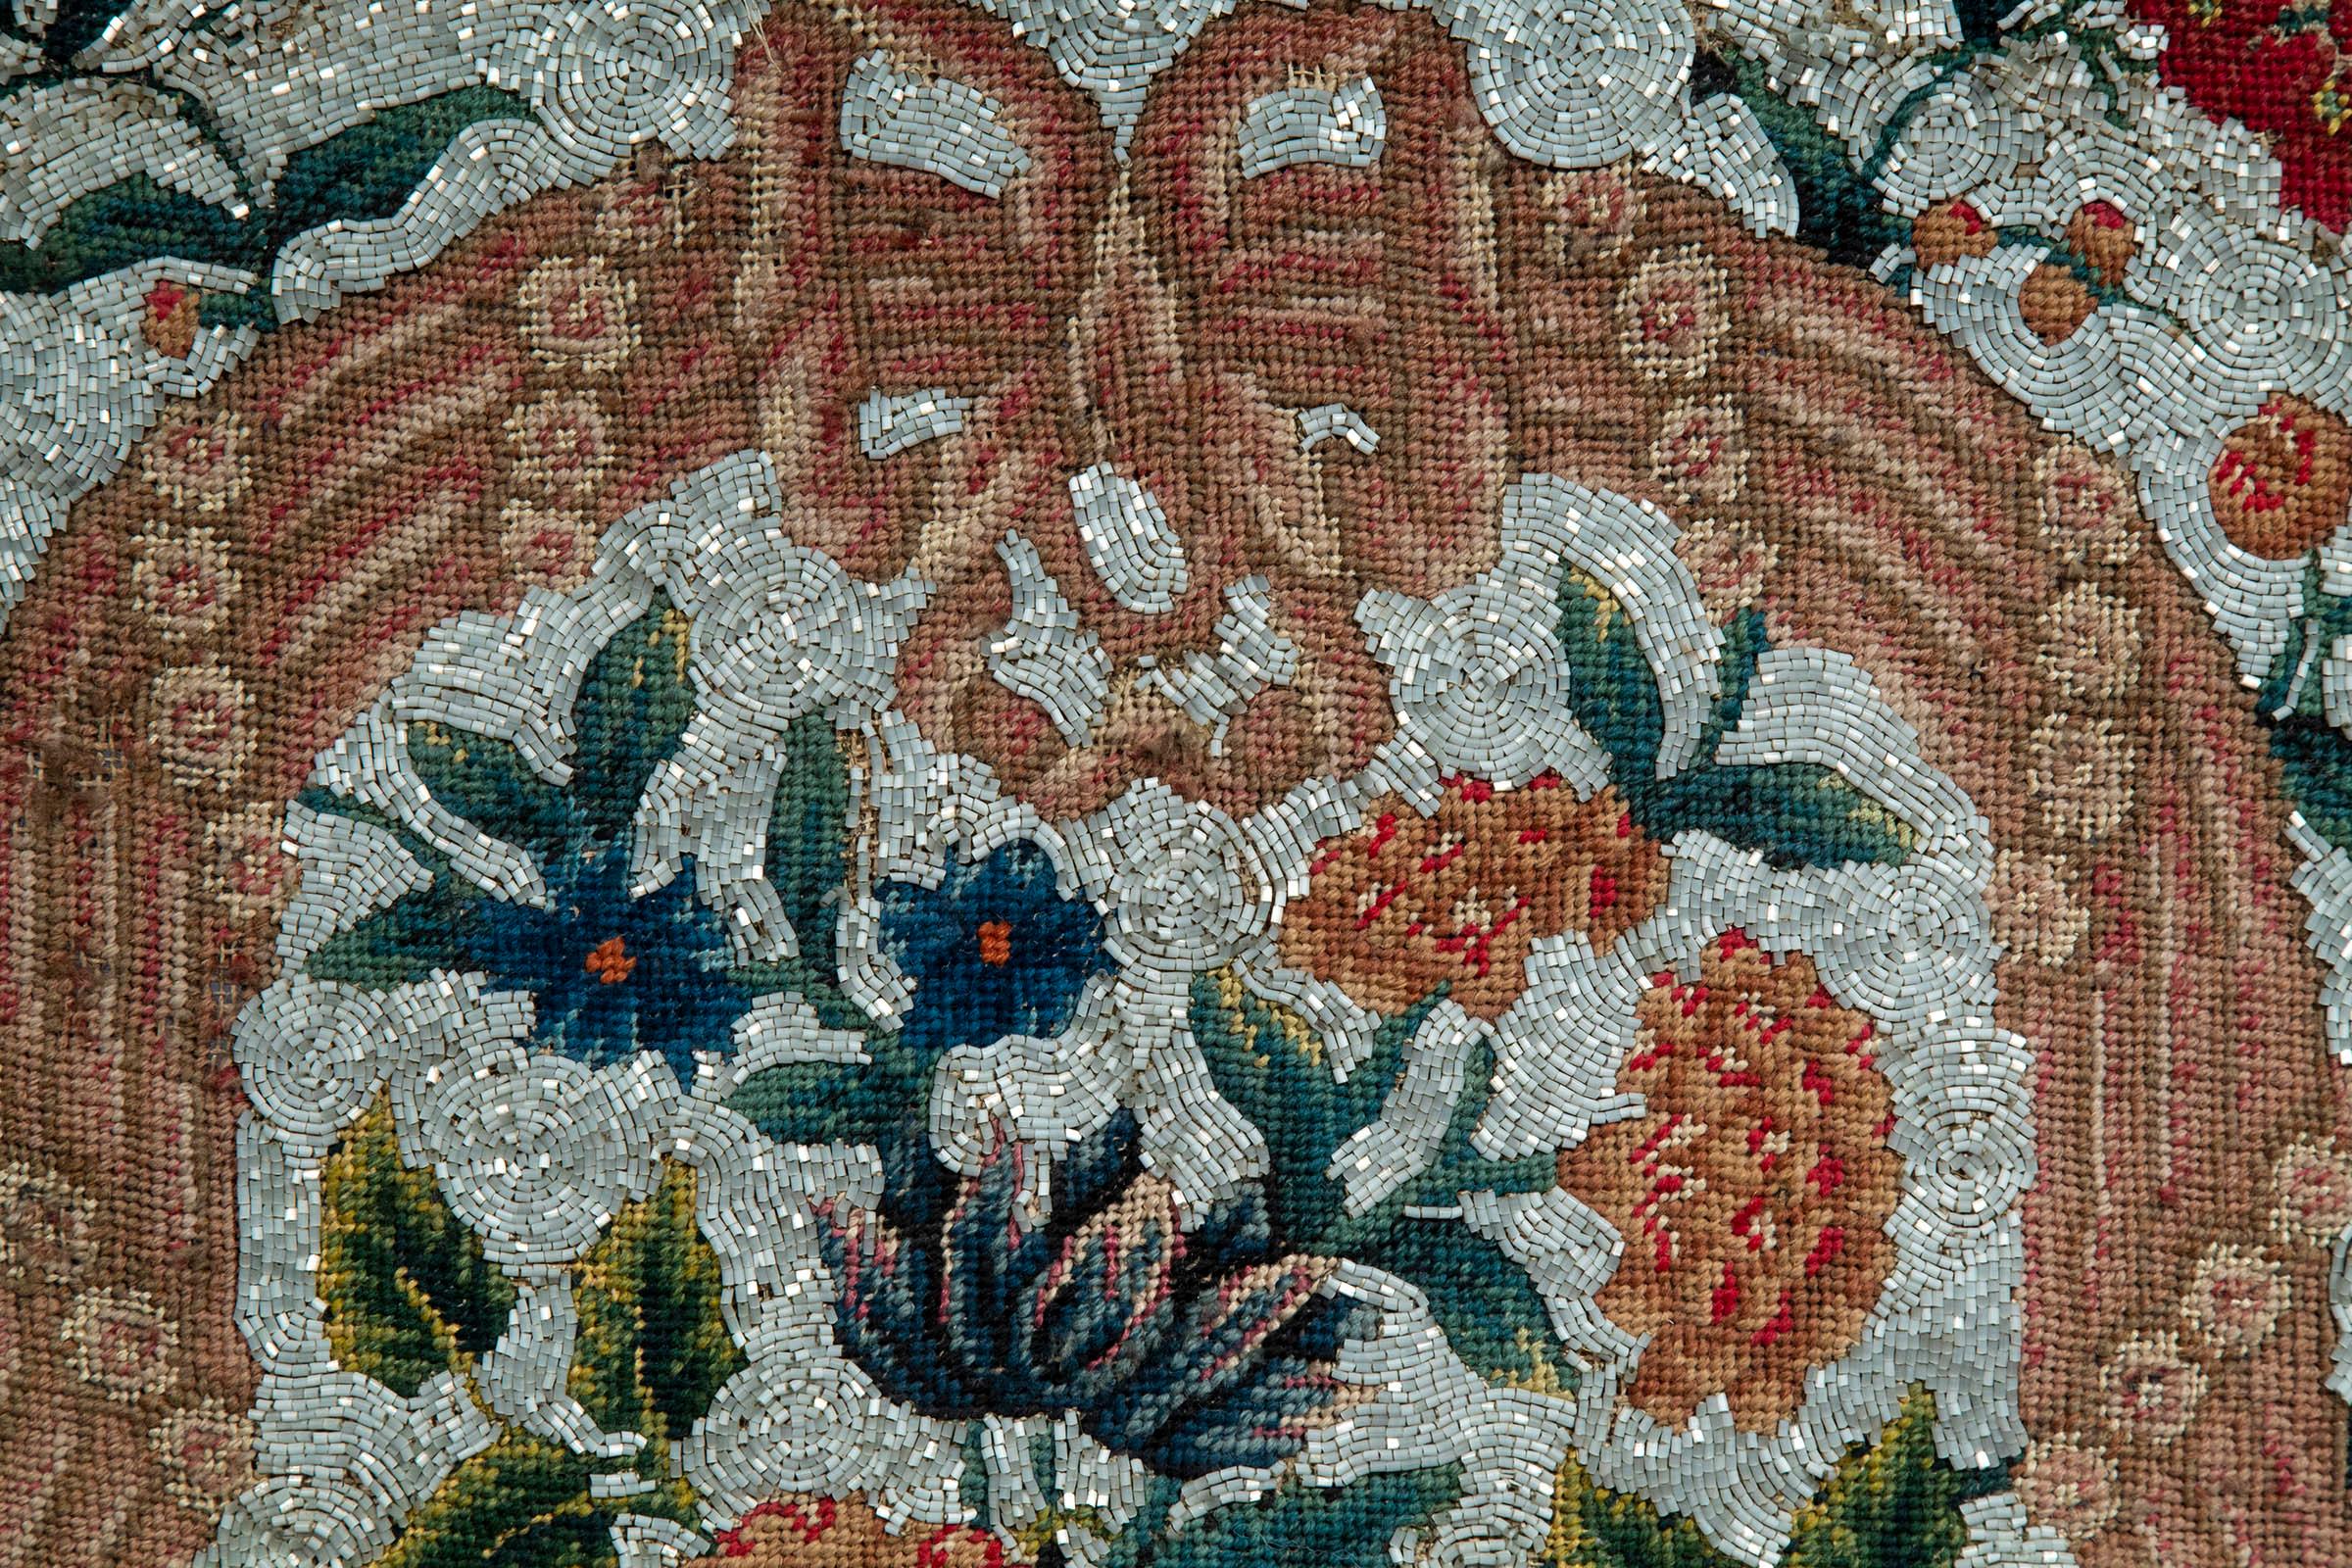 Ein exquisites Wandteppichbild aus dem frühen 19. Jahrhundert mit Rillen und Perlenstickerei, in einem antiken Parkettrahmen.

Größe der Tafel: 20.52,5 cm x 54 cm (75 Zoll).